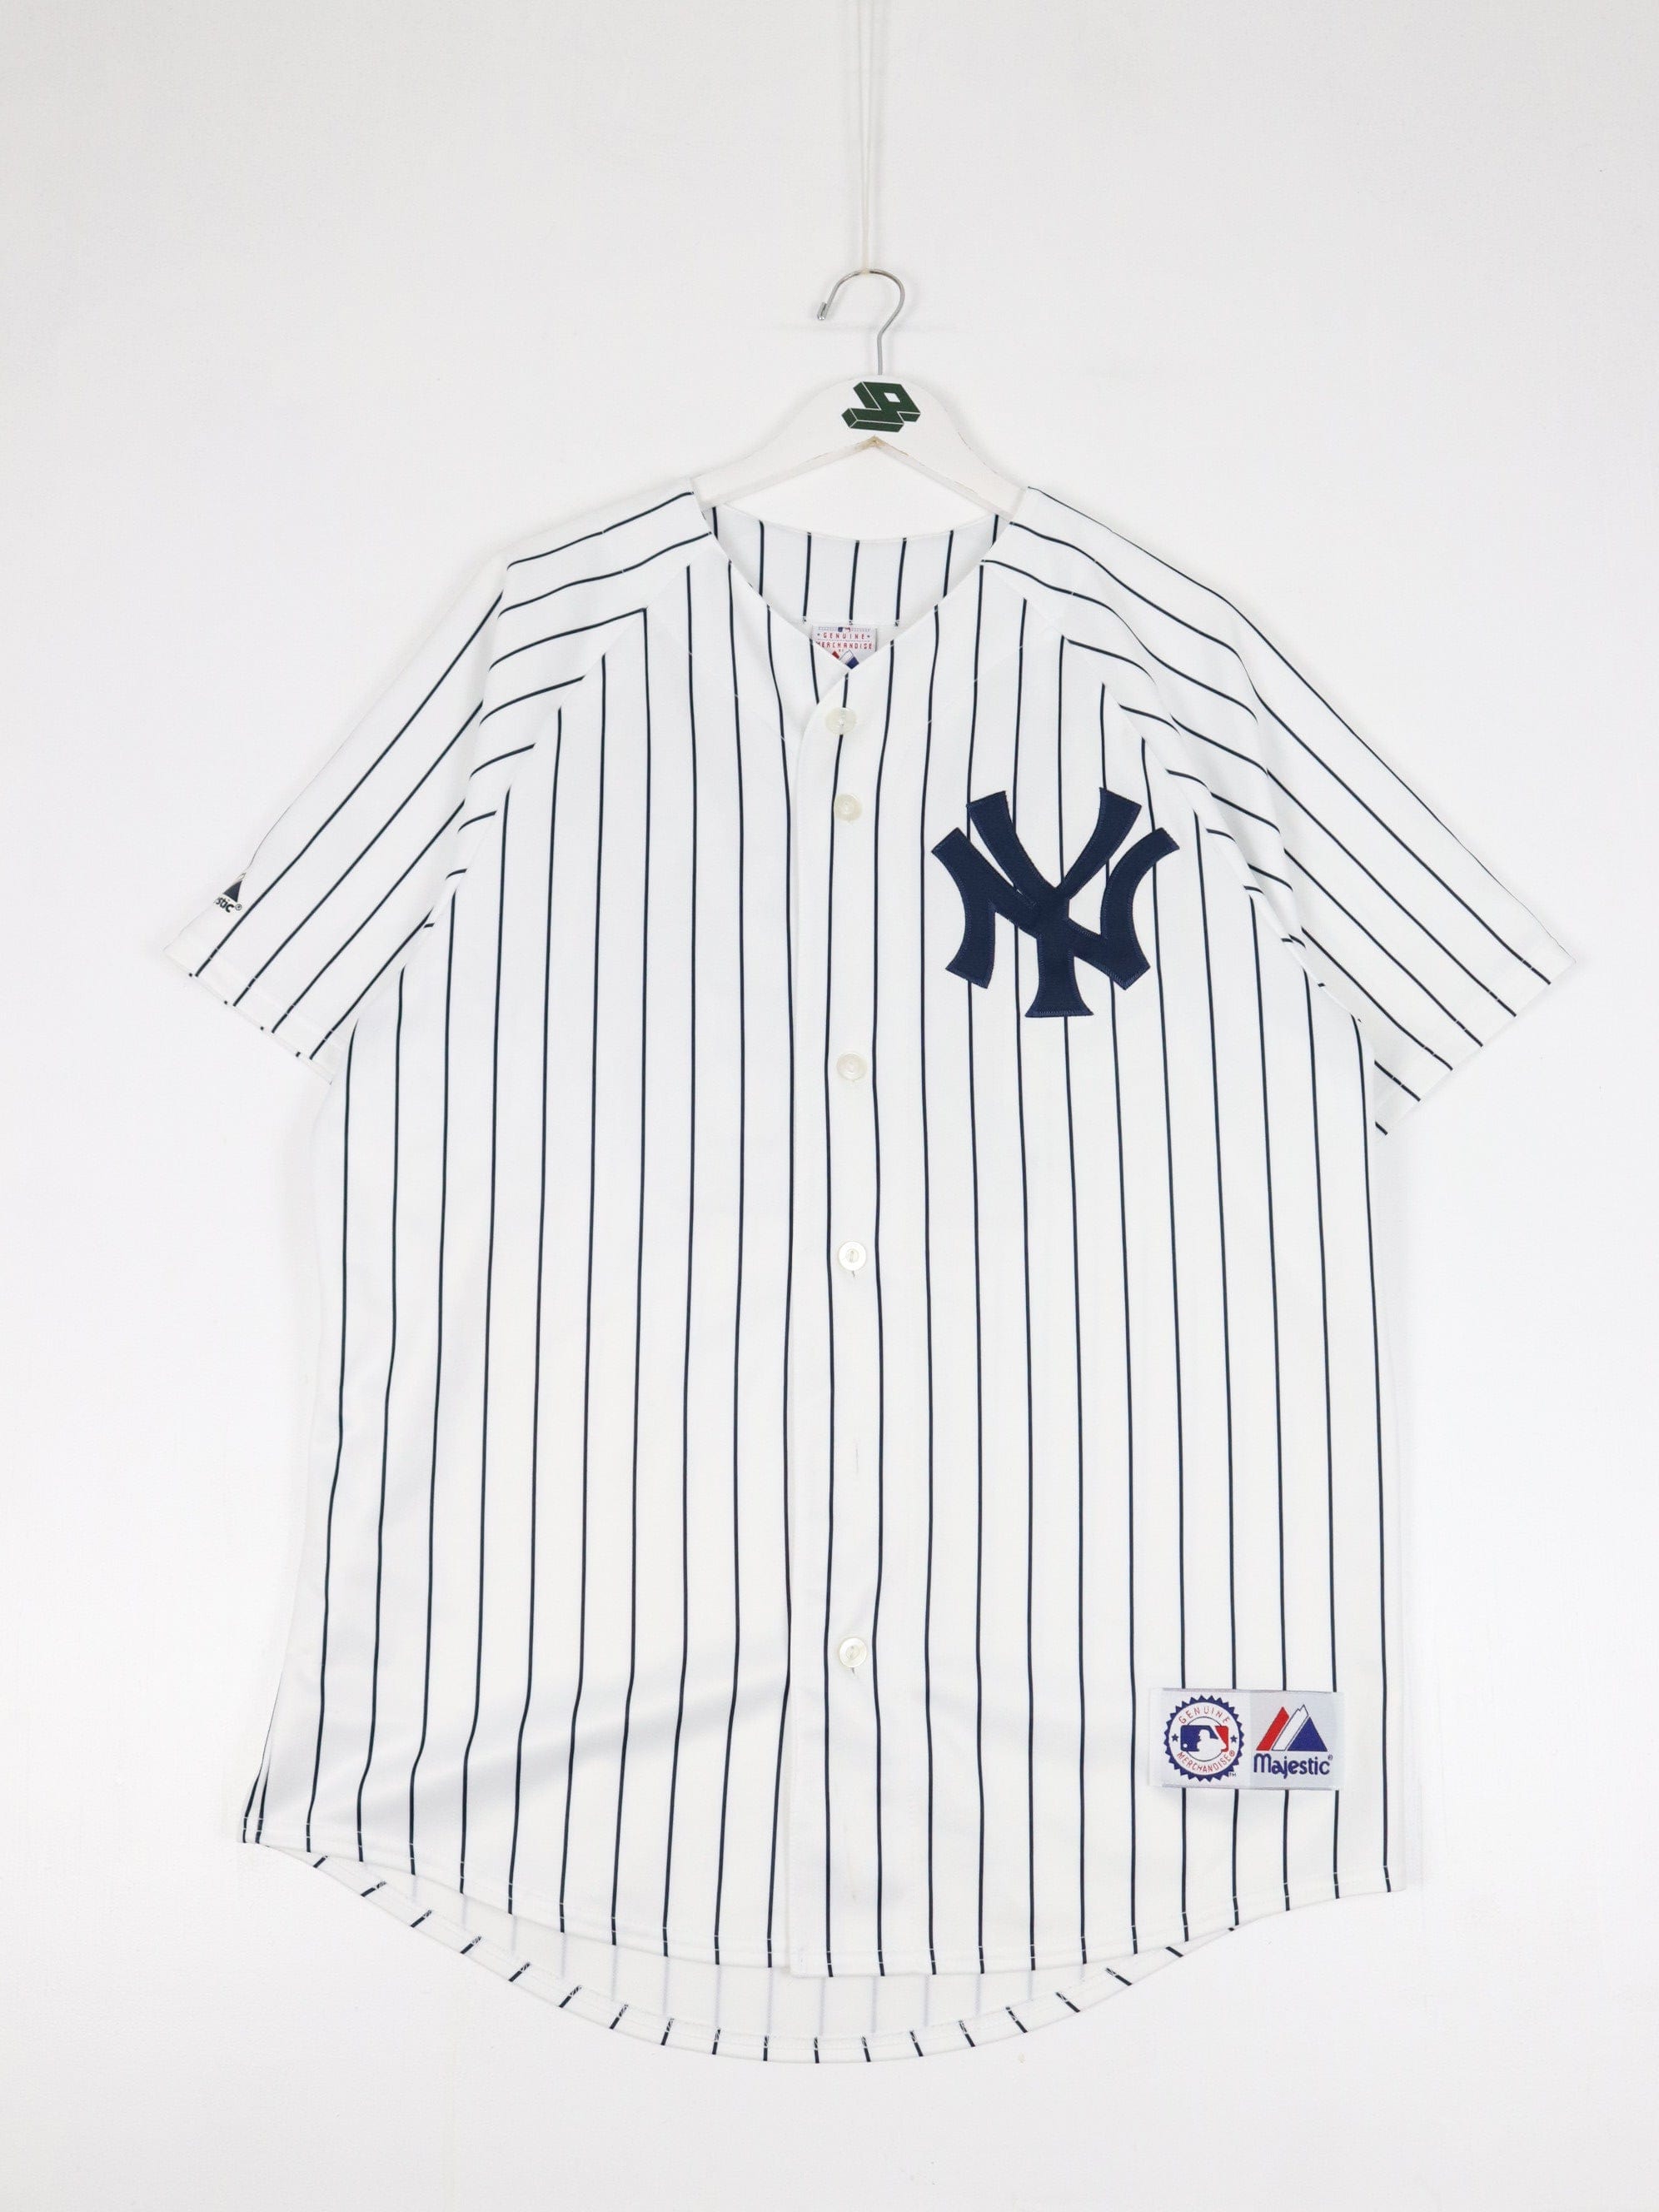 New York Yankees T-Shirt Vintage 90s Mlb Baseball Made In Usa Mens